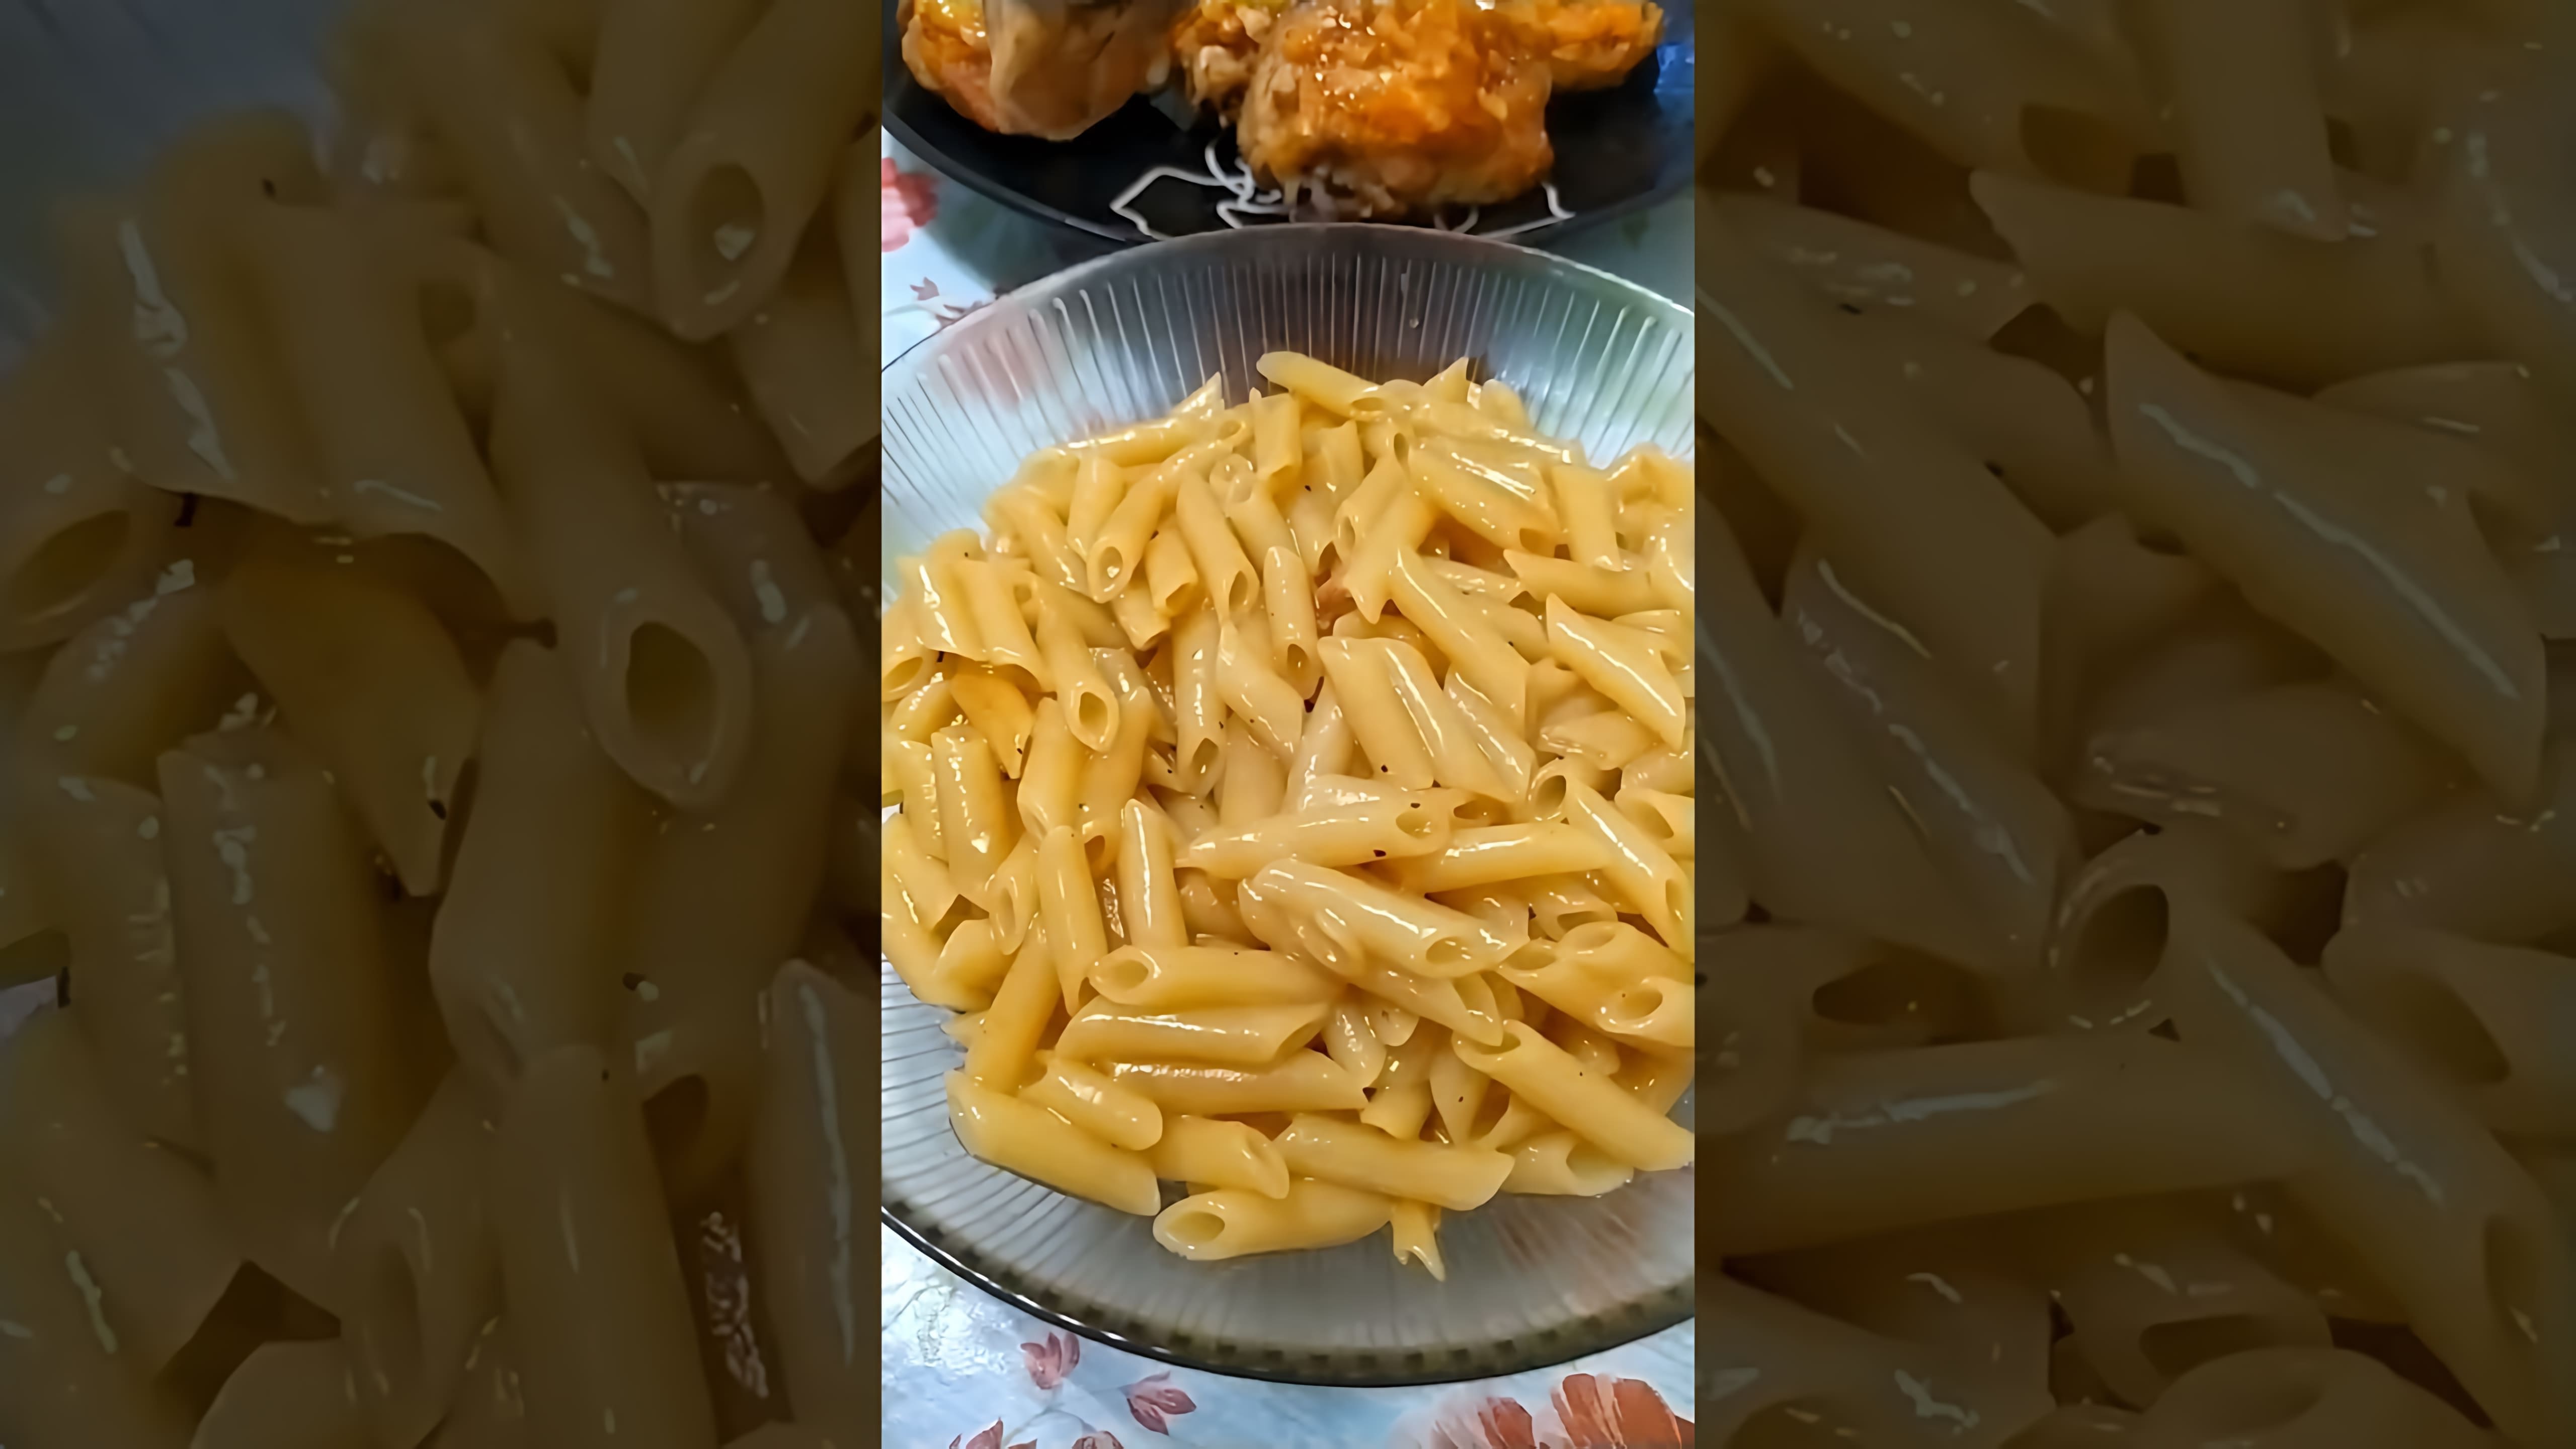 В этом видео я покажу, как готовлю быстрый и вкусный обед или ужин - жареную курицу с макаронами